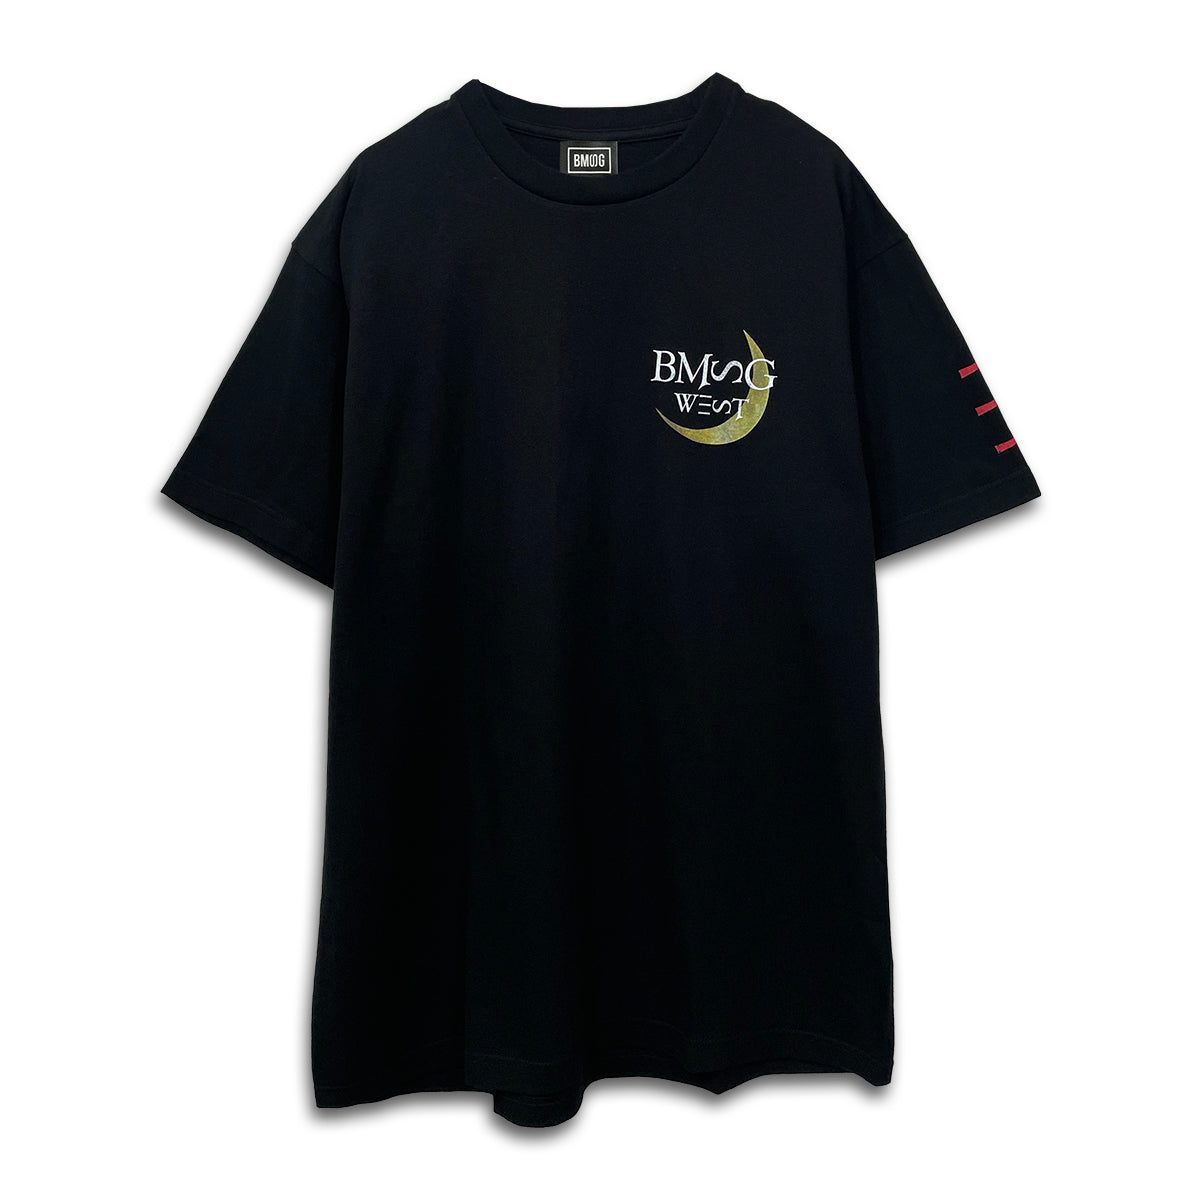 BMSG FES'23 Tシャツ -WEST-